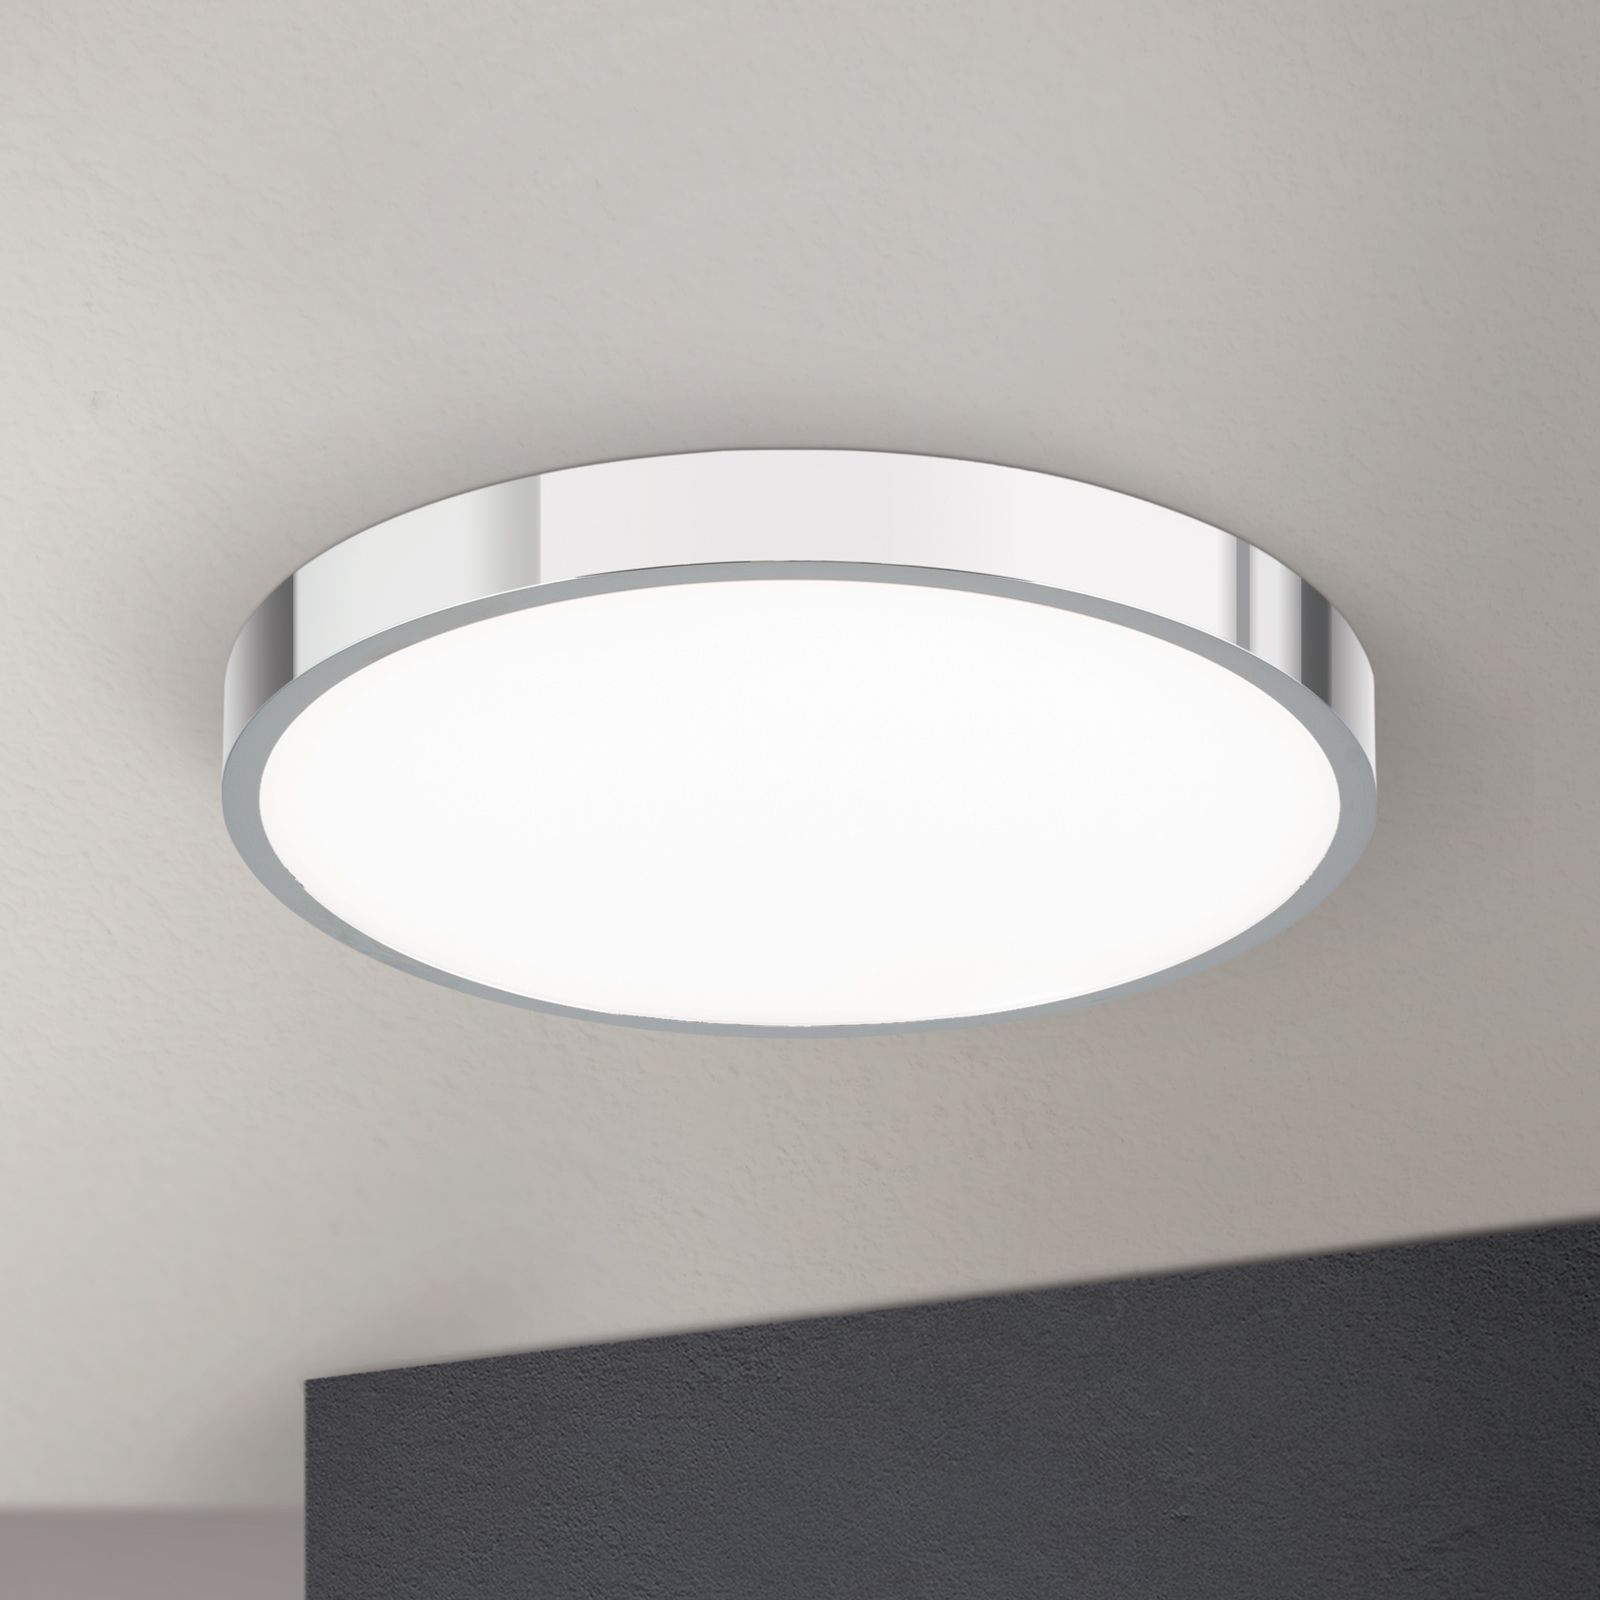 Beleuchtung für Räume - stilvolle Lösungen für jeden Raum | Deckenlampen